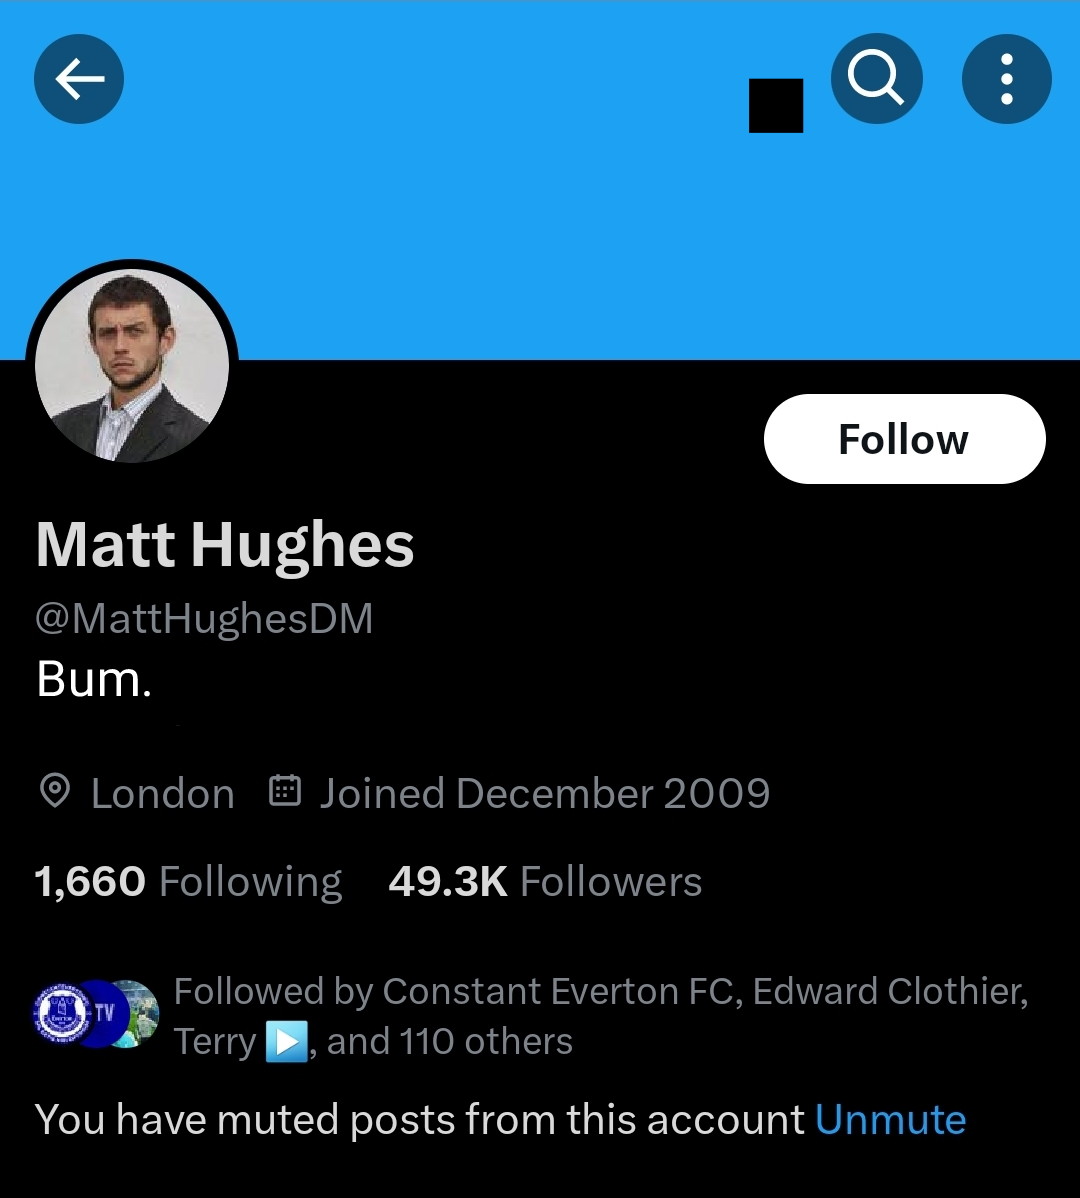 I see @MattHughesDM has updated his bio.